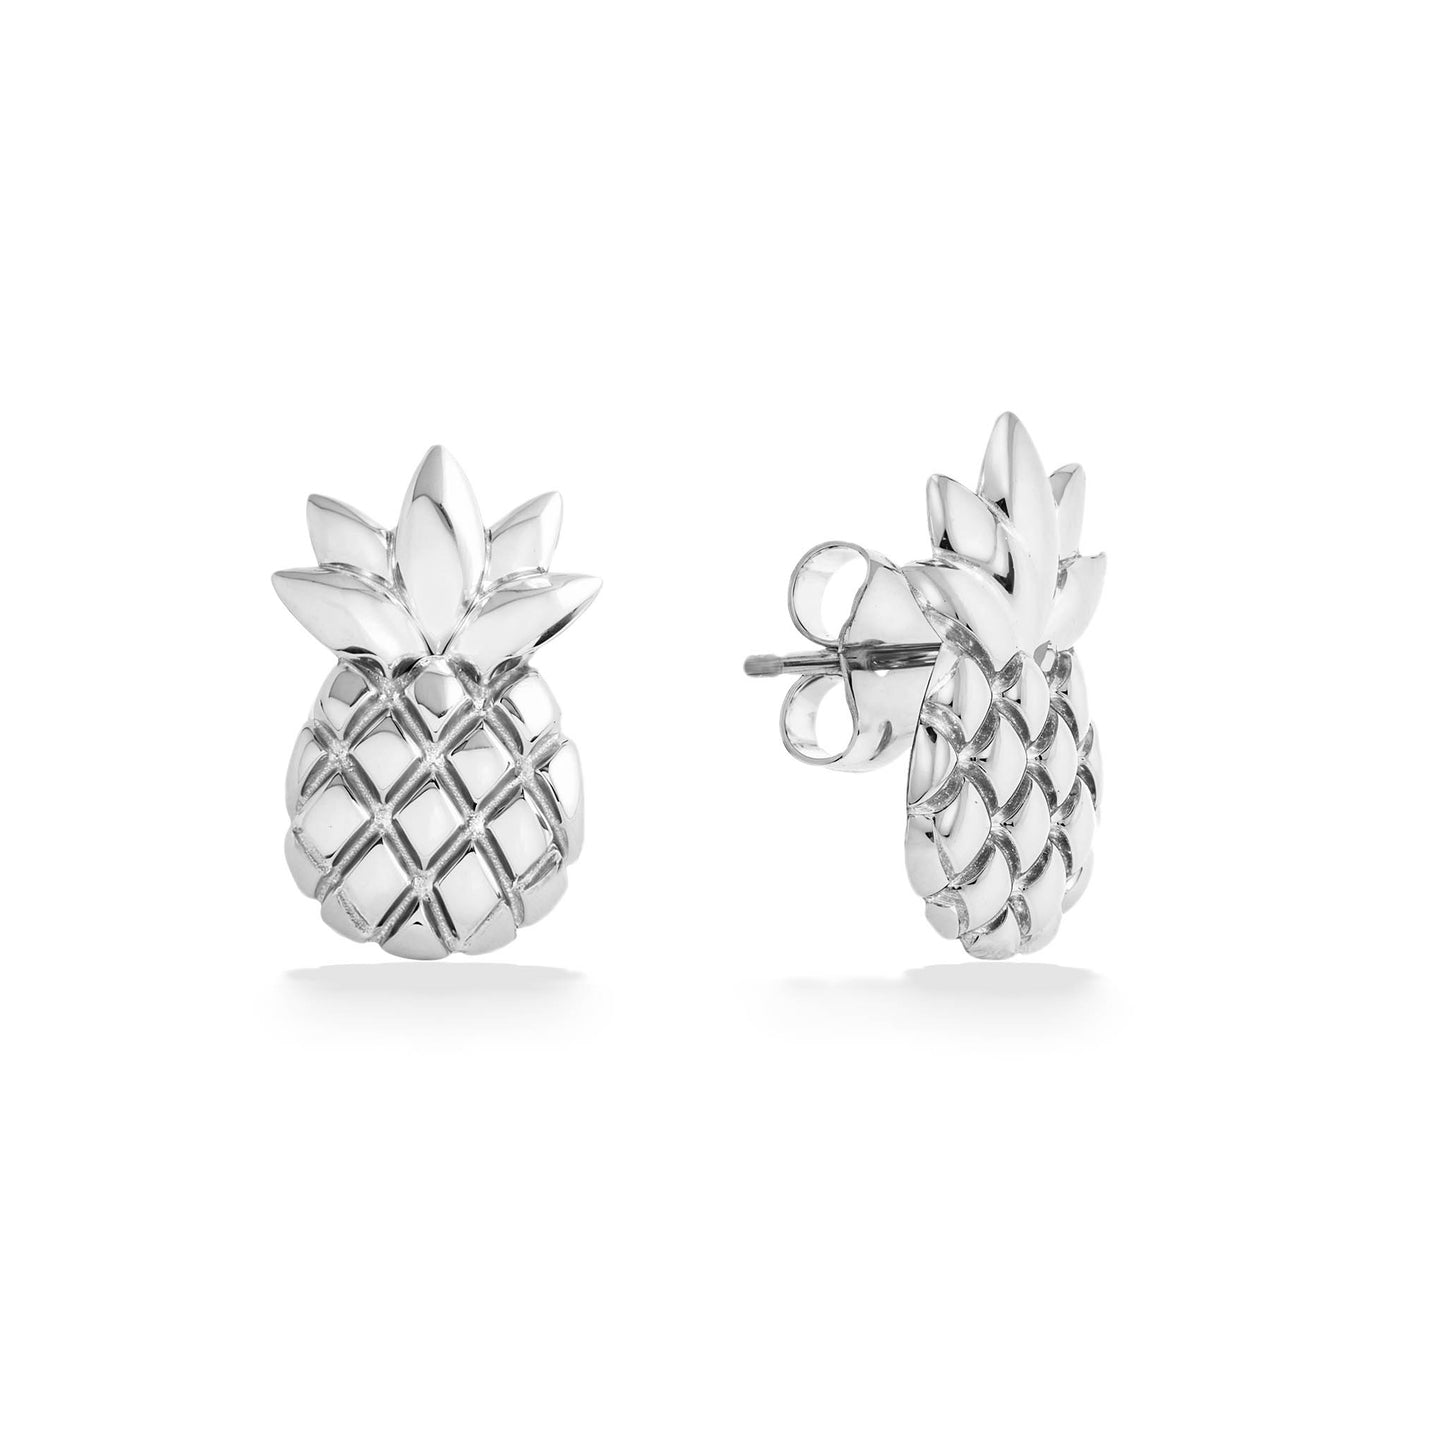 44204 - 14K White Gold - Pineapple Stud Earrings